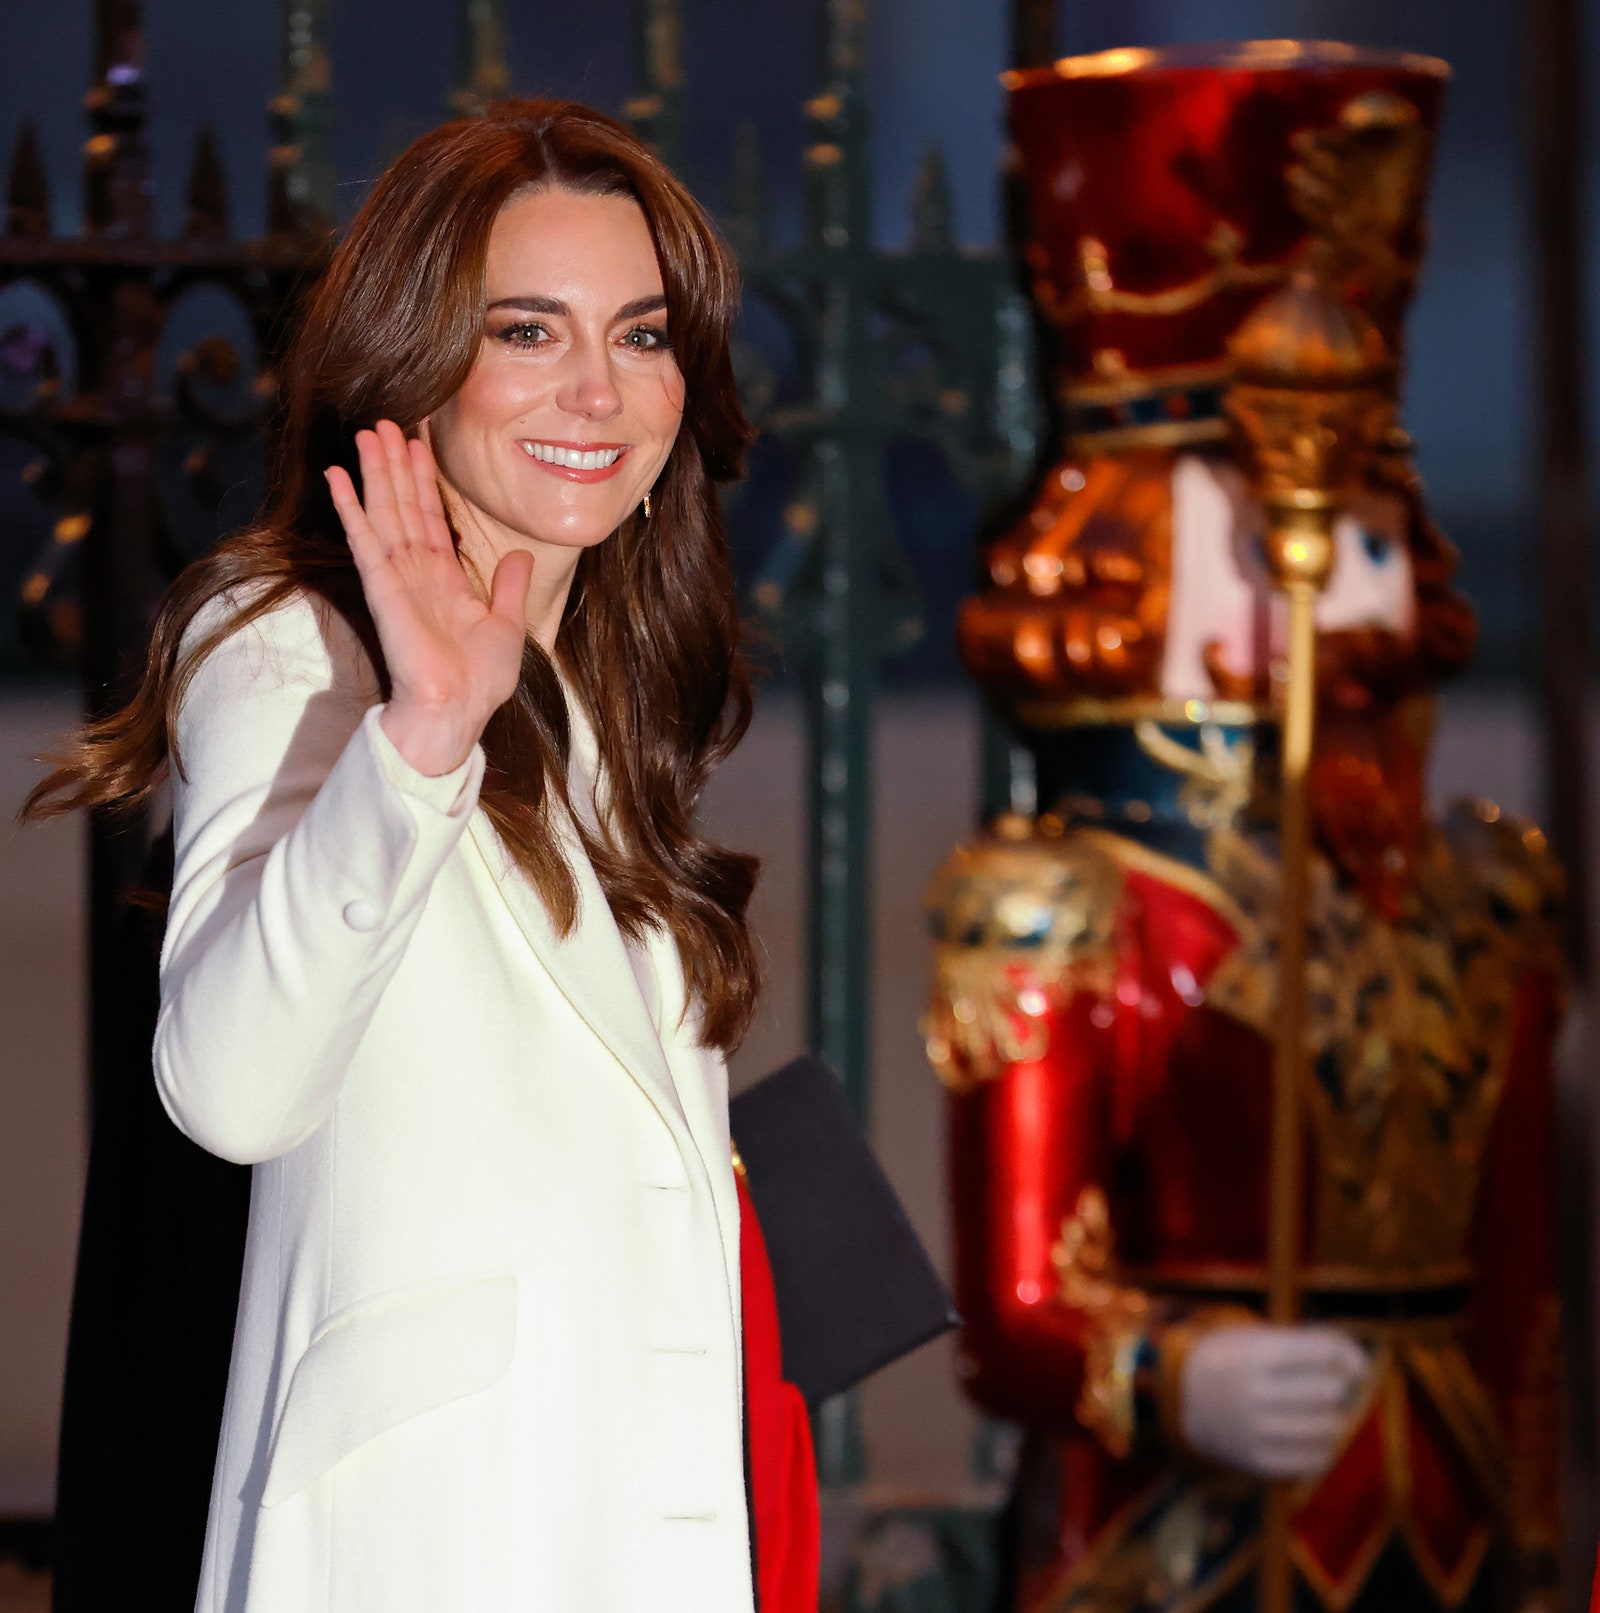 Kate Middleton Attends a Christmas Carol Service